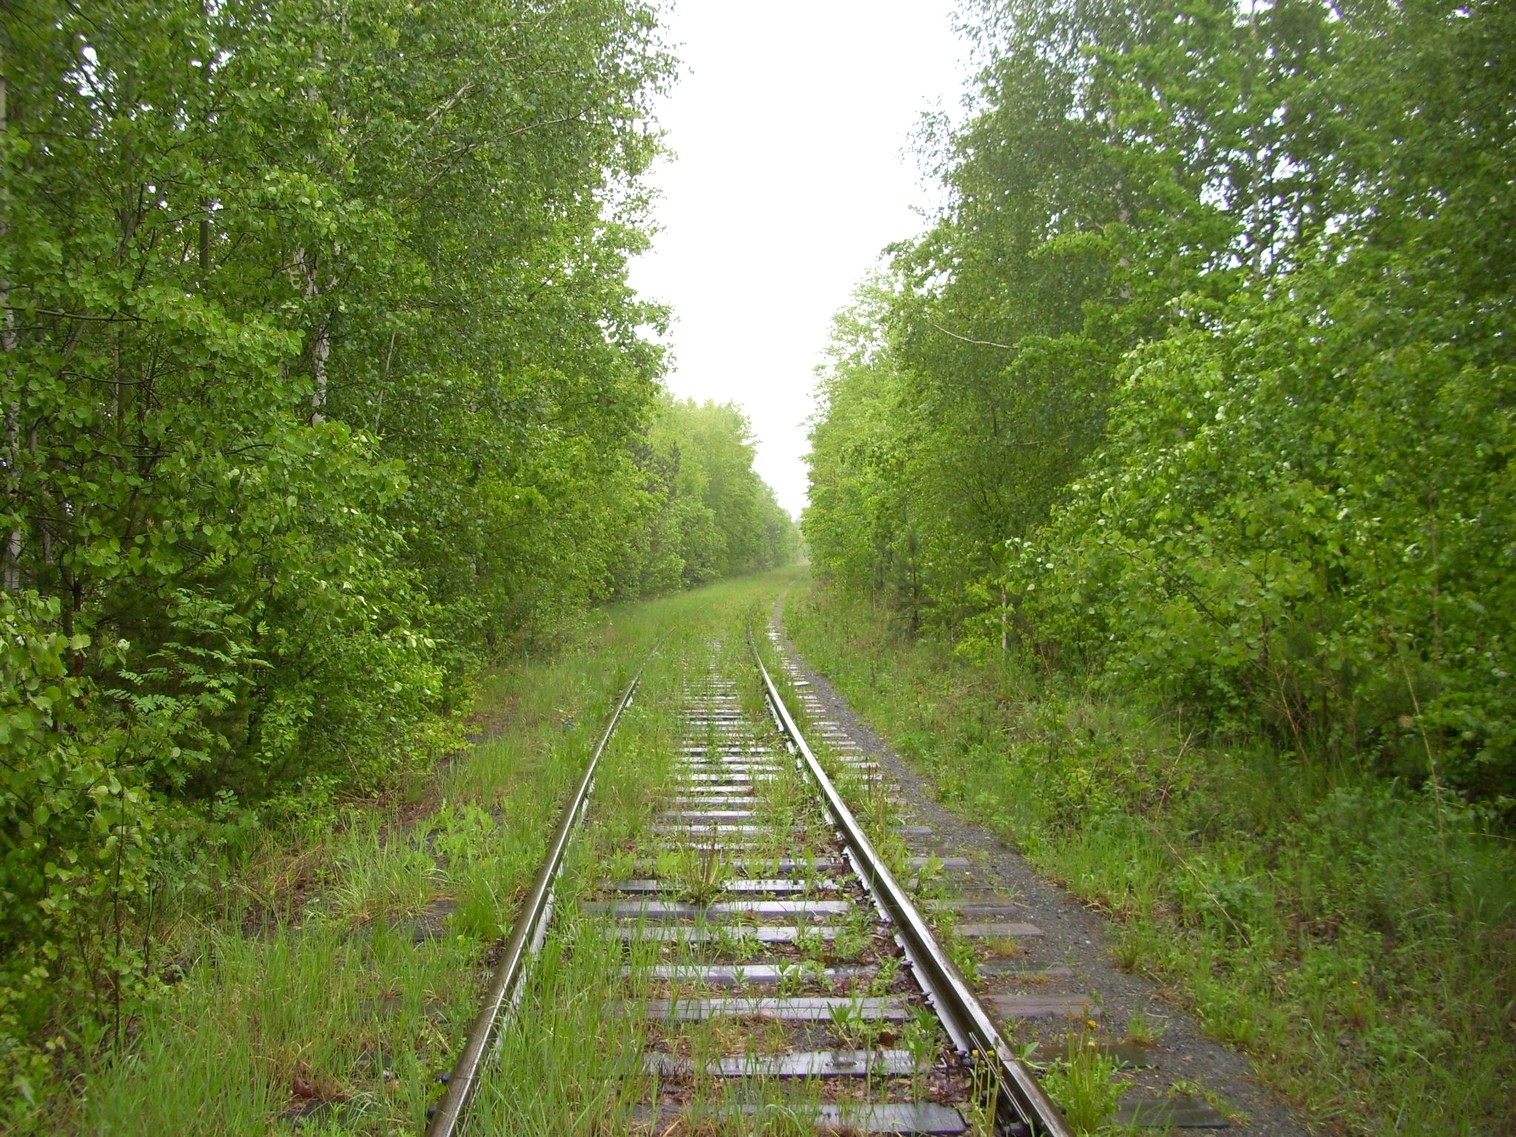 Железнодорожная линия предприятия железнодорожного транспорта завода «Уралмаш»  —  фотографии, сделанные в 2010 году (часть 6)